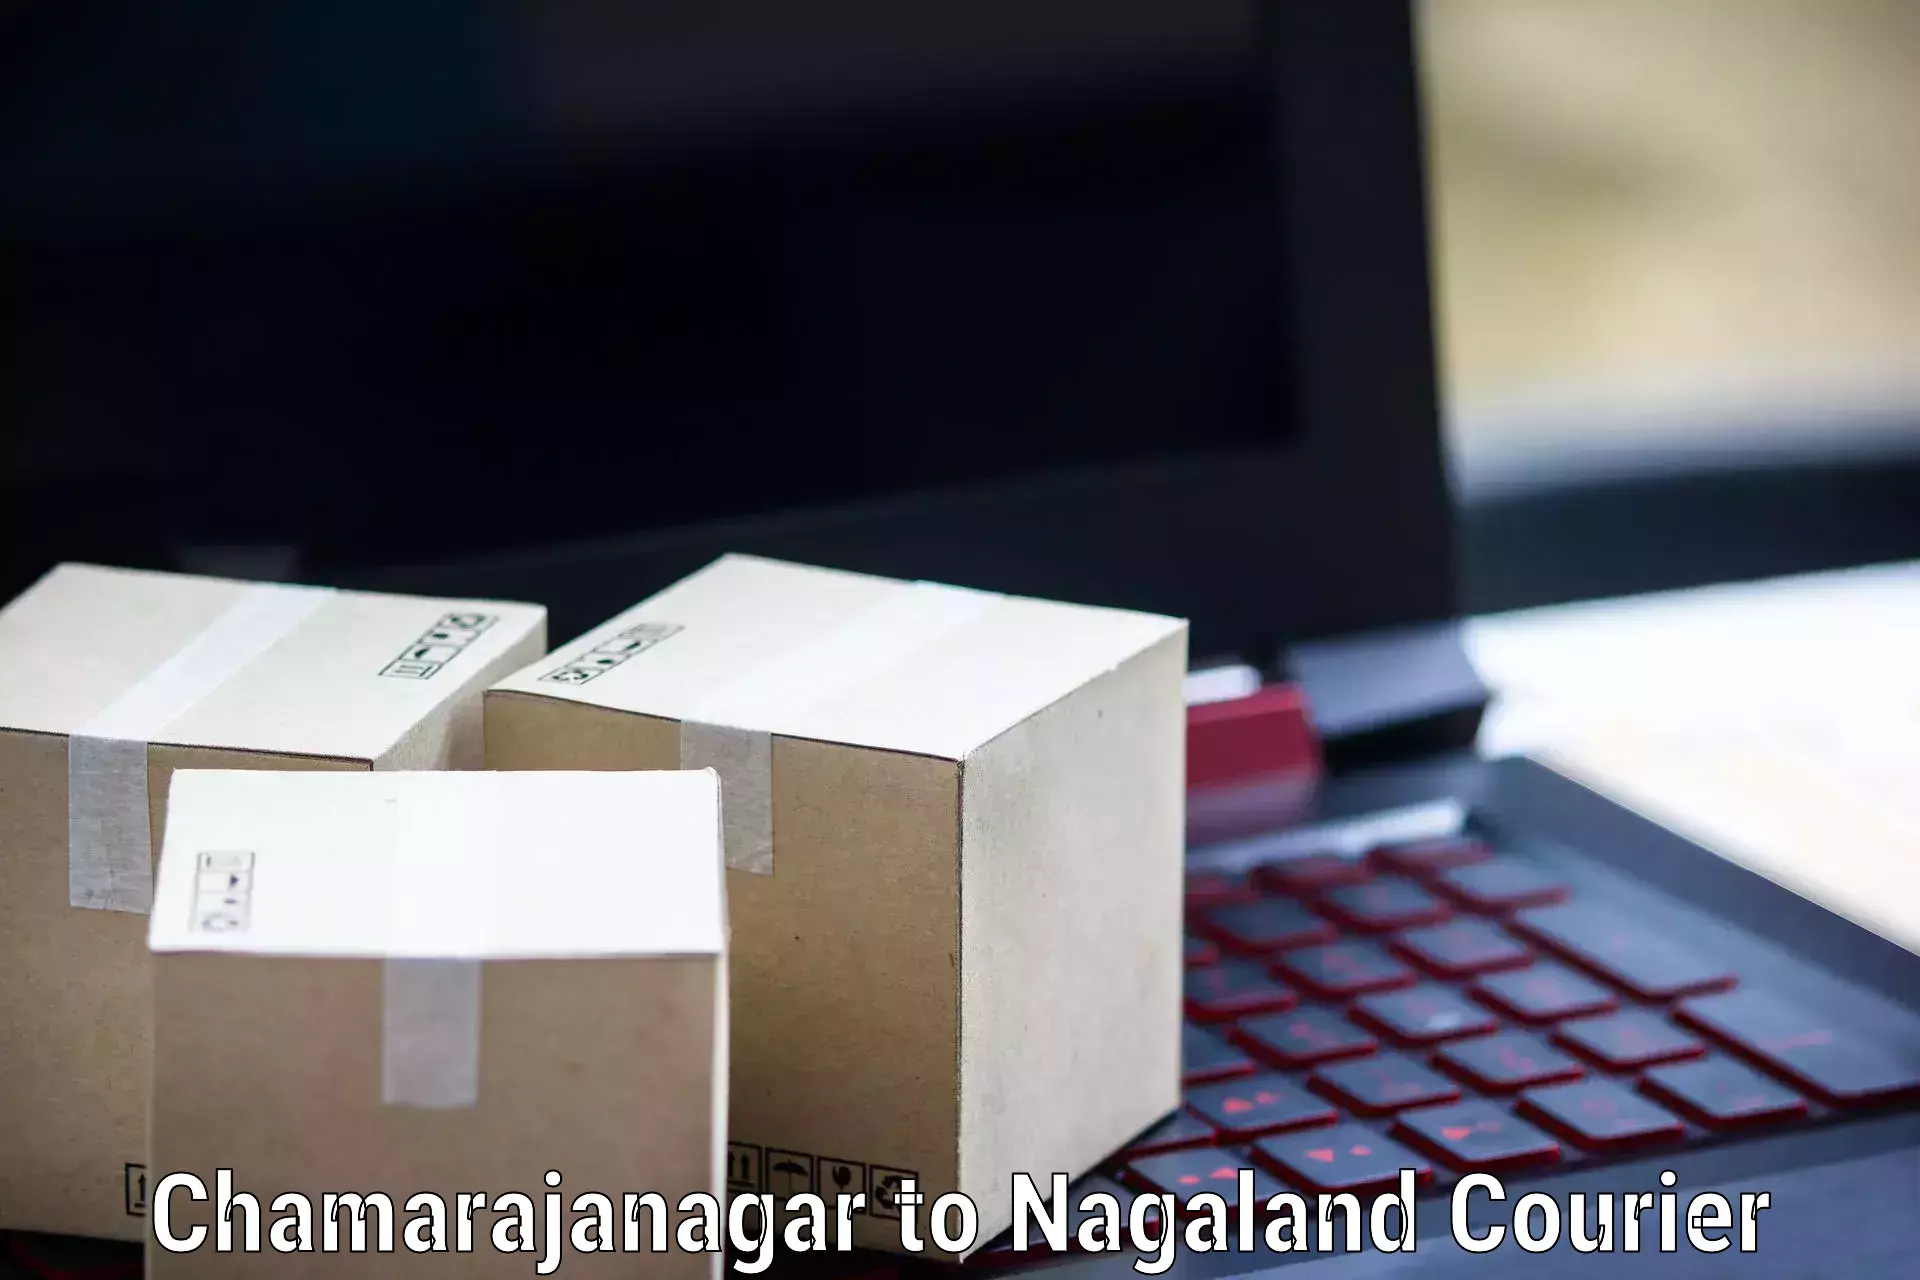 Global shipping networks Chamarajanagar to Longleng